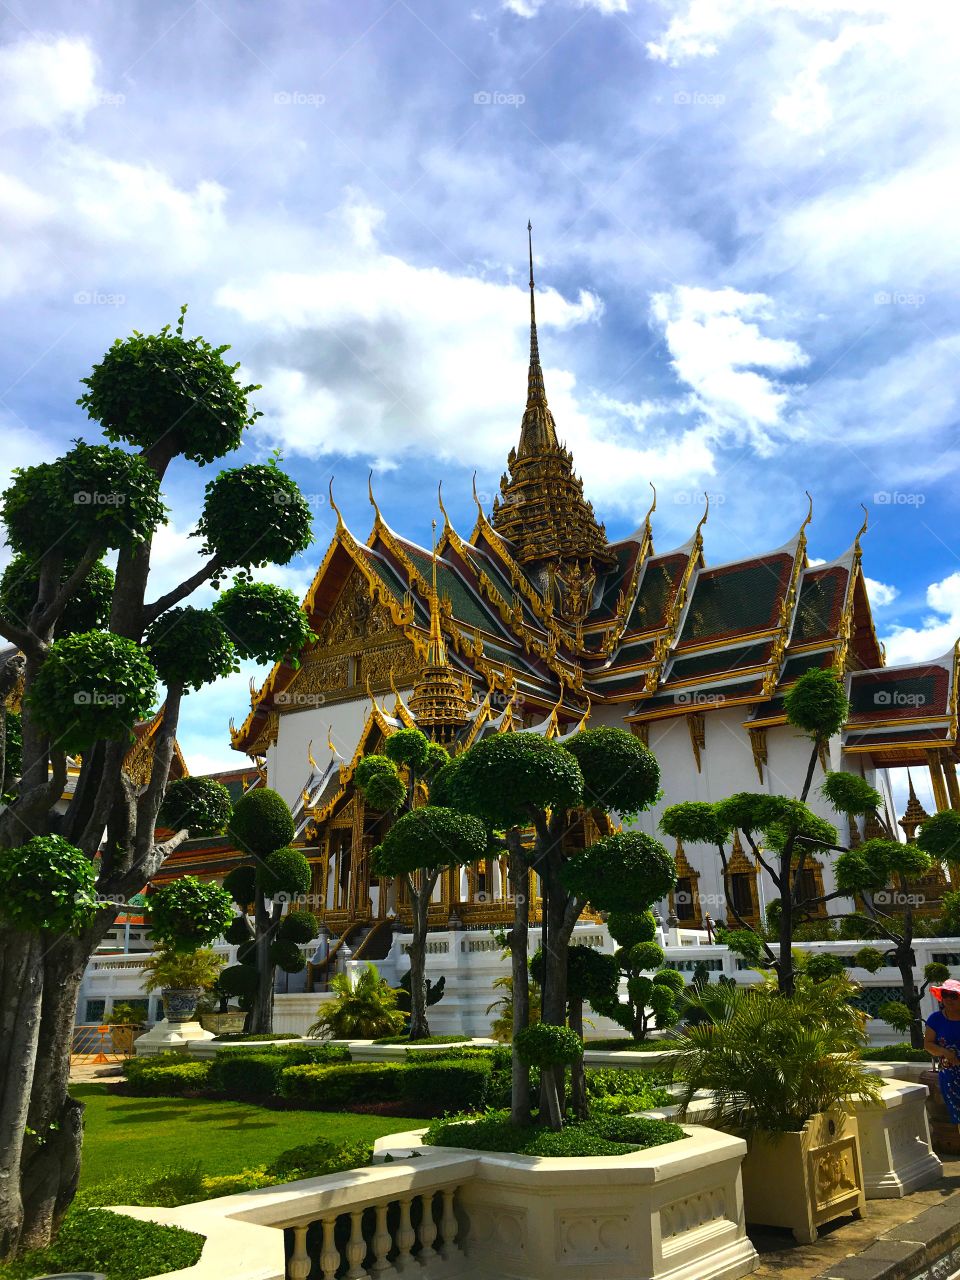 Grand Palace / Bangkok Thailand 87